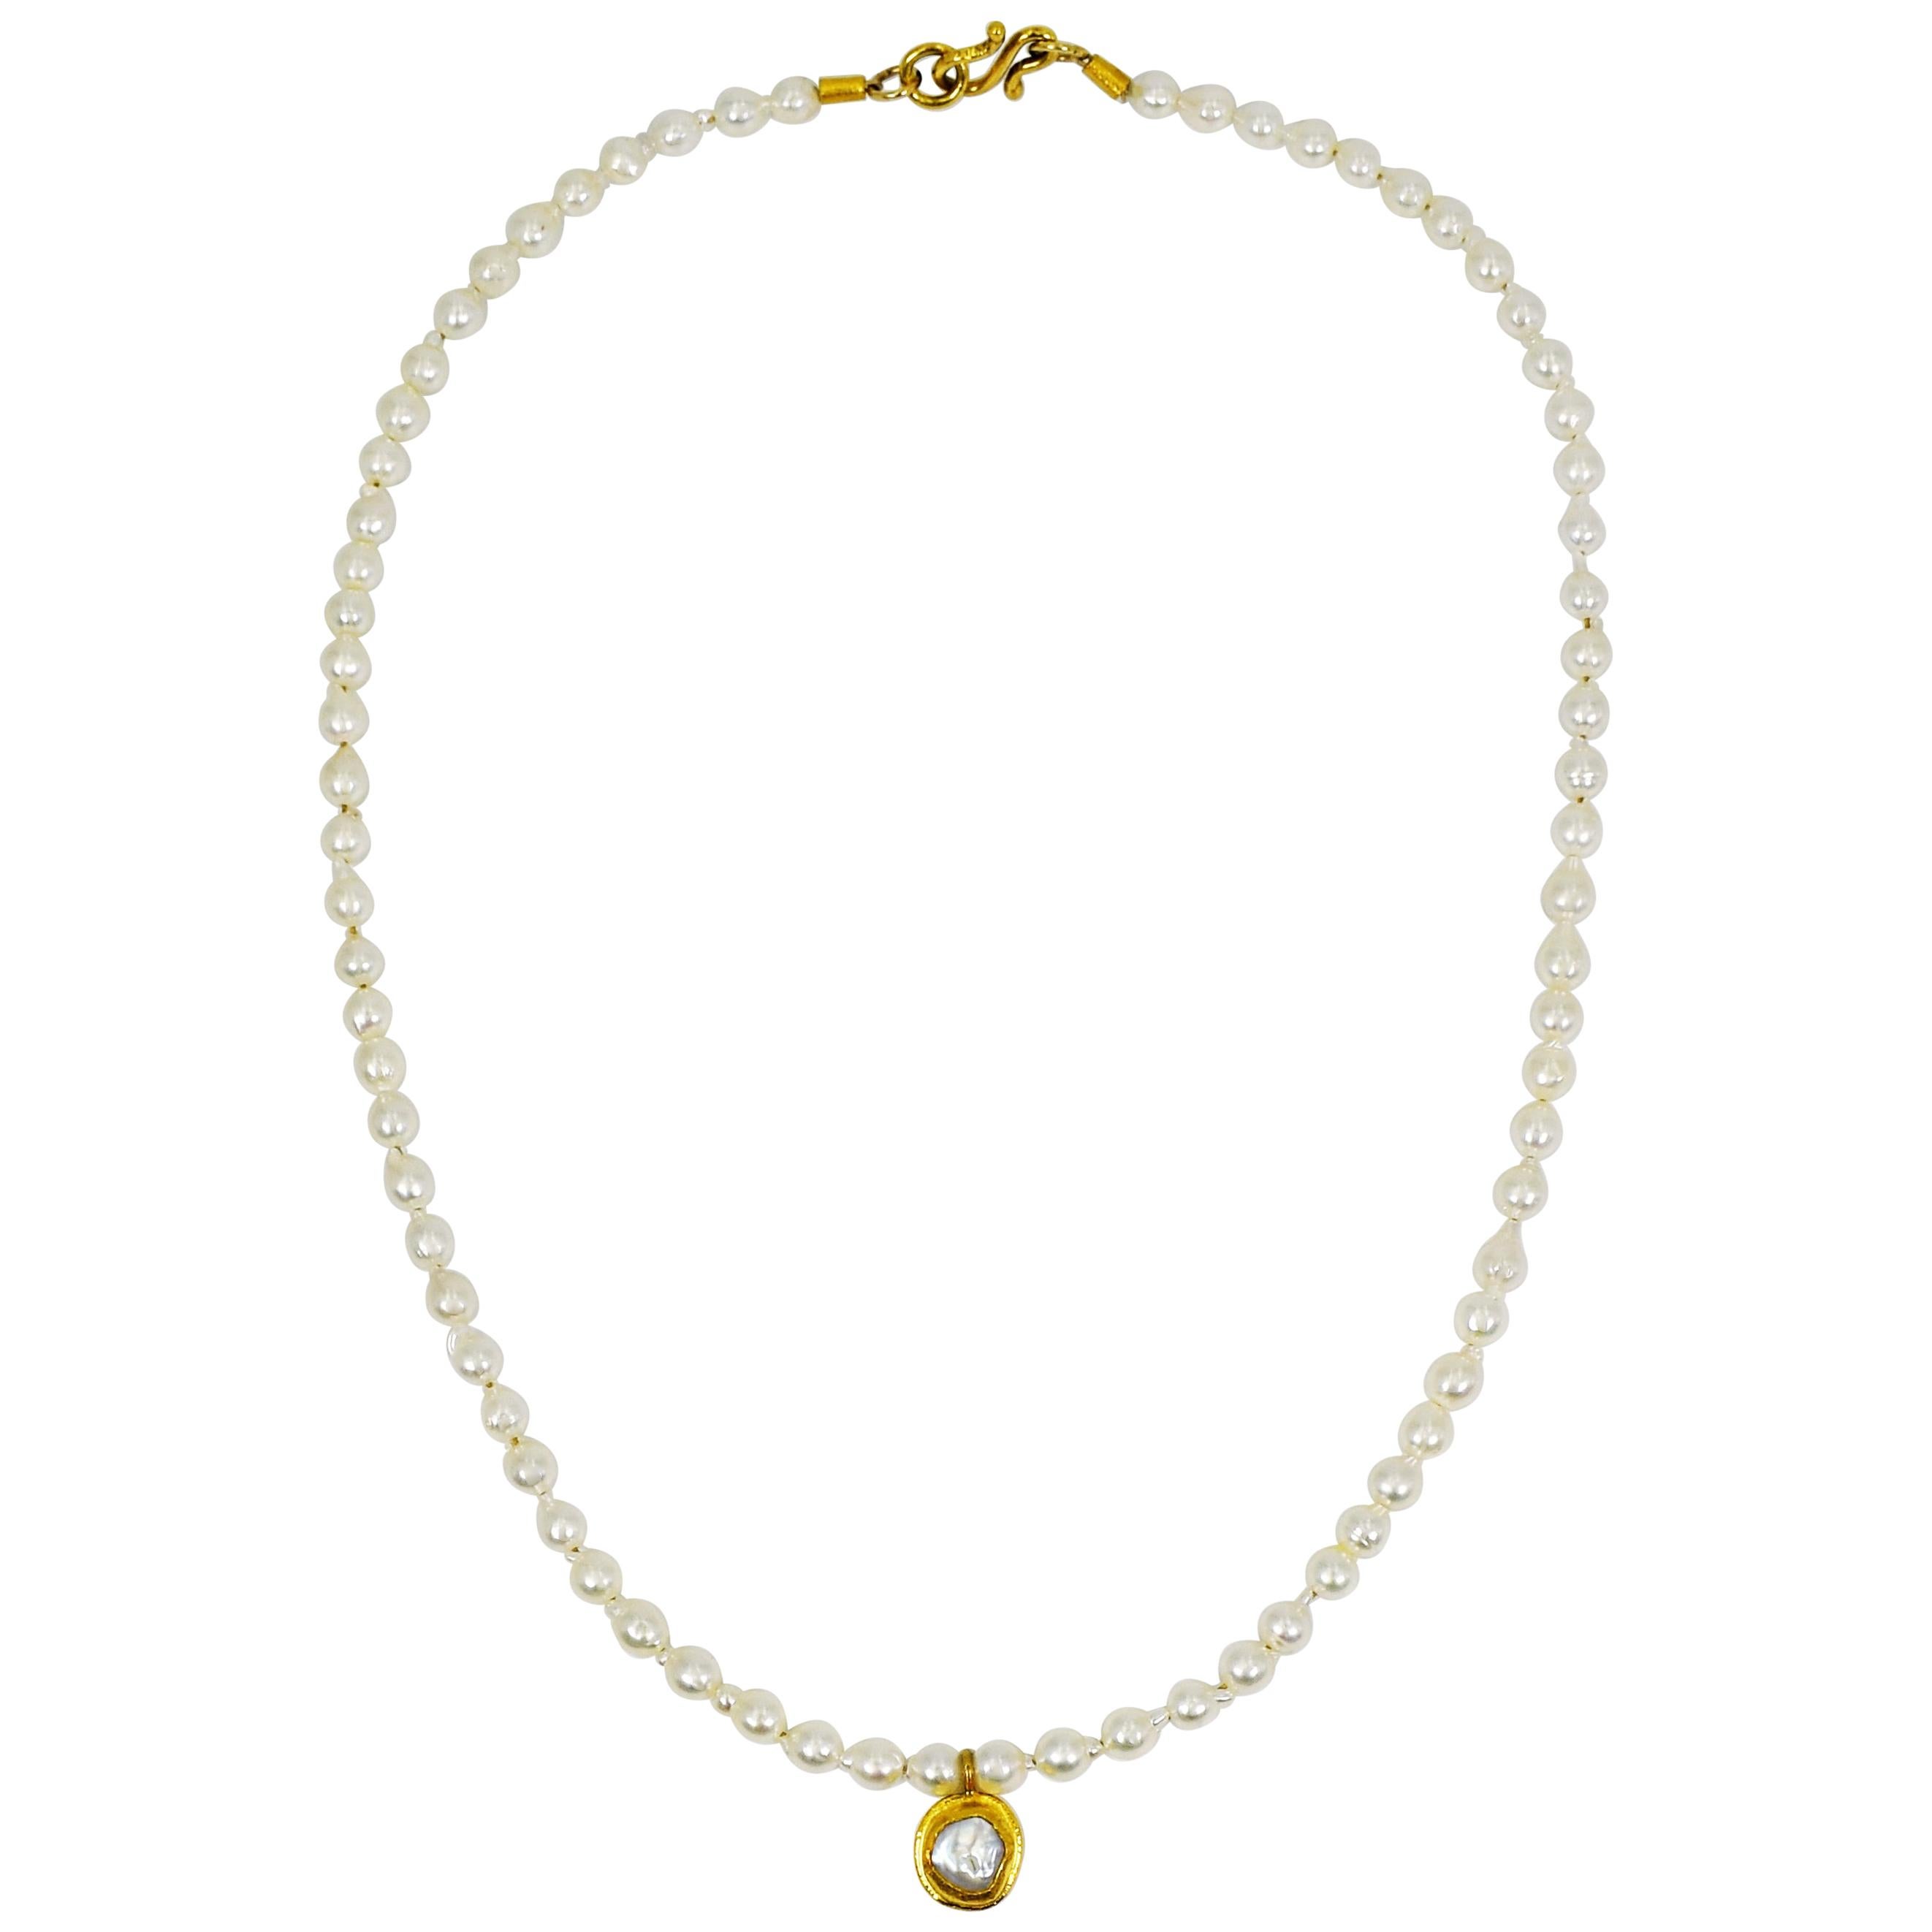 Anhänger aus Süßwasserperlen und 22-karätigem Gelbgold an einer zierlichen, weißen Perlenkette. Die Halskette ist 16 Zoll lang und mit einem 22-karätigen Goldhakenverschluss versehen. Zeitgemäßes, zartes Update des zeitlosen, eleganten Stils von